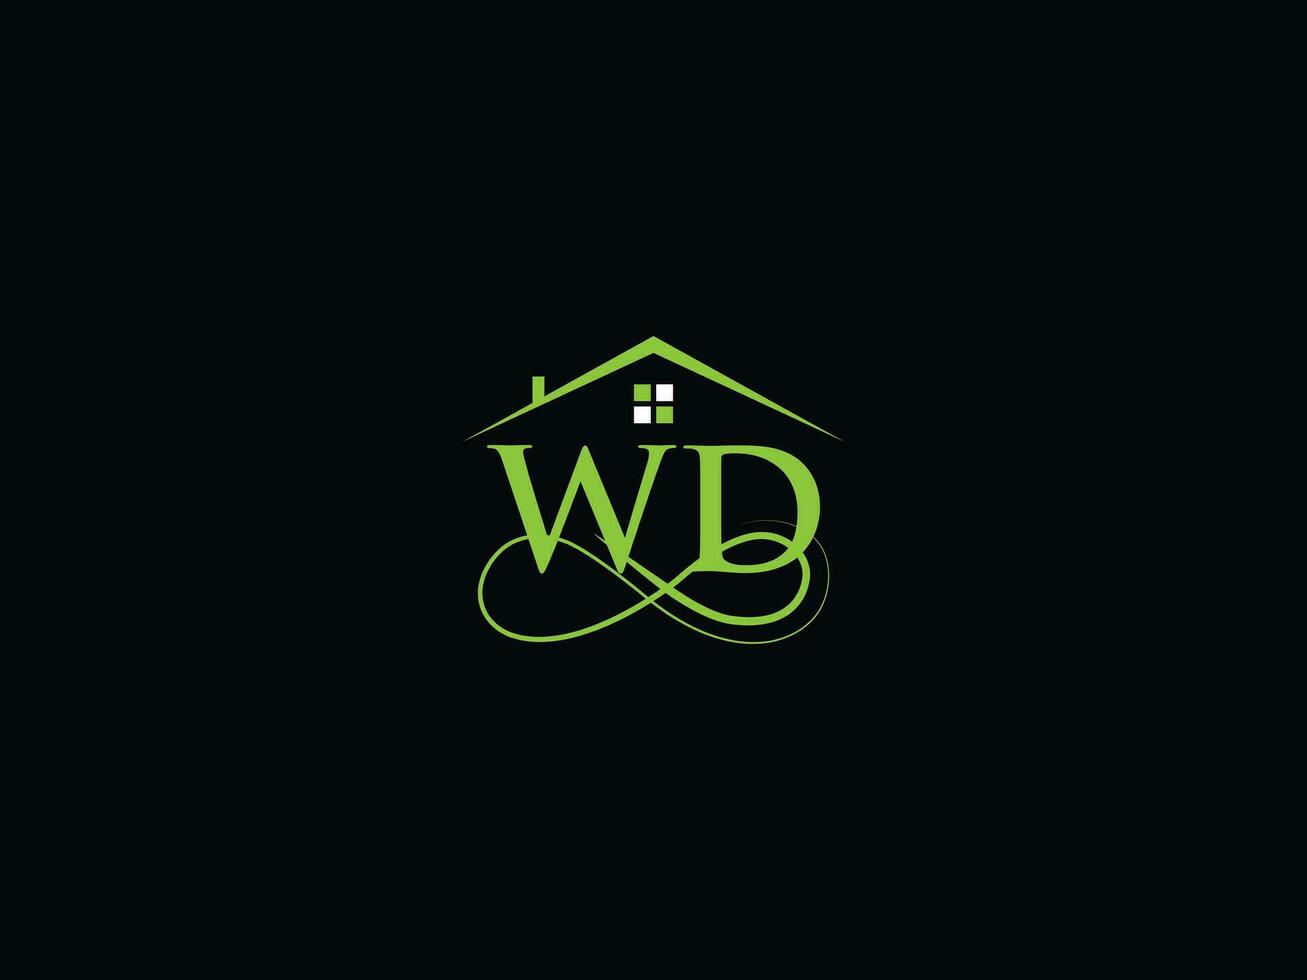 moderno wd real inmuebles logo, lujo wd logo icono vector para edificio negocio